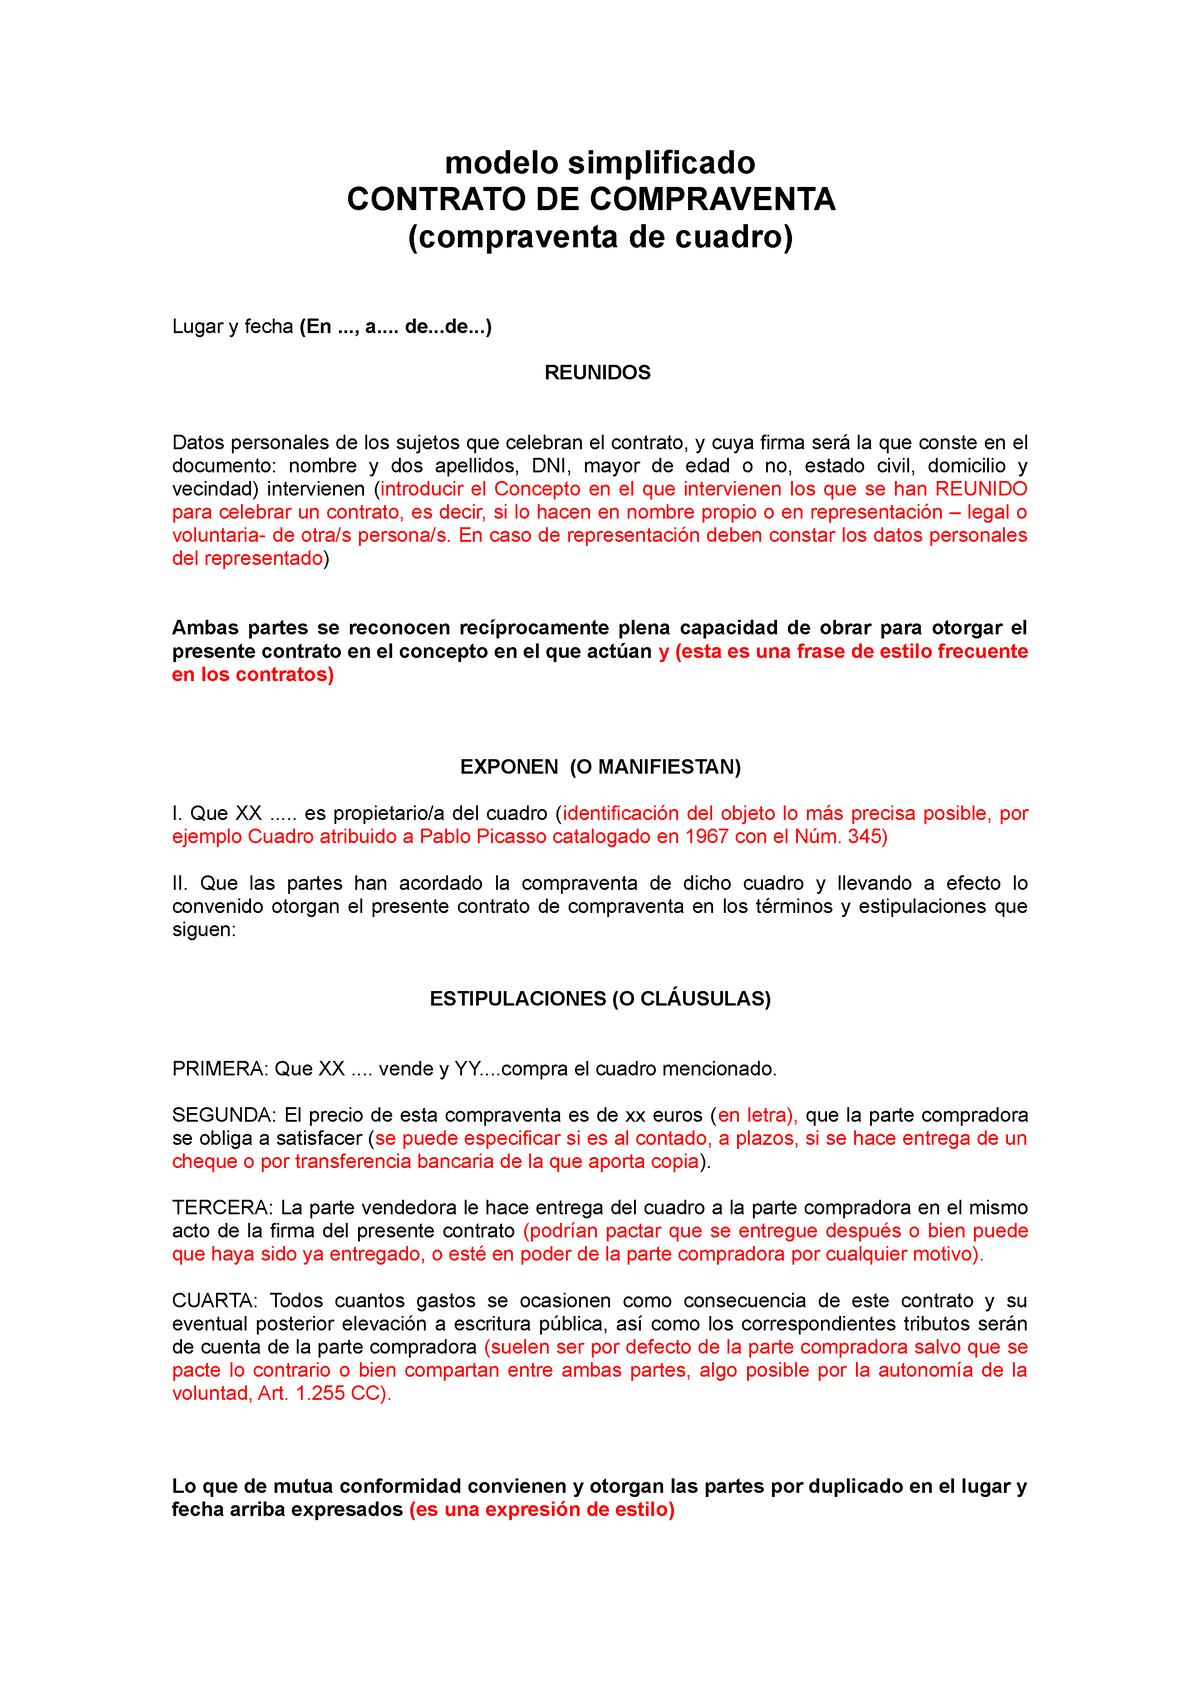 Modelo de redacción de contrato de compraventa de cuadro - modelo  simplificado CONTRATO DE - Studocu